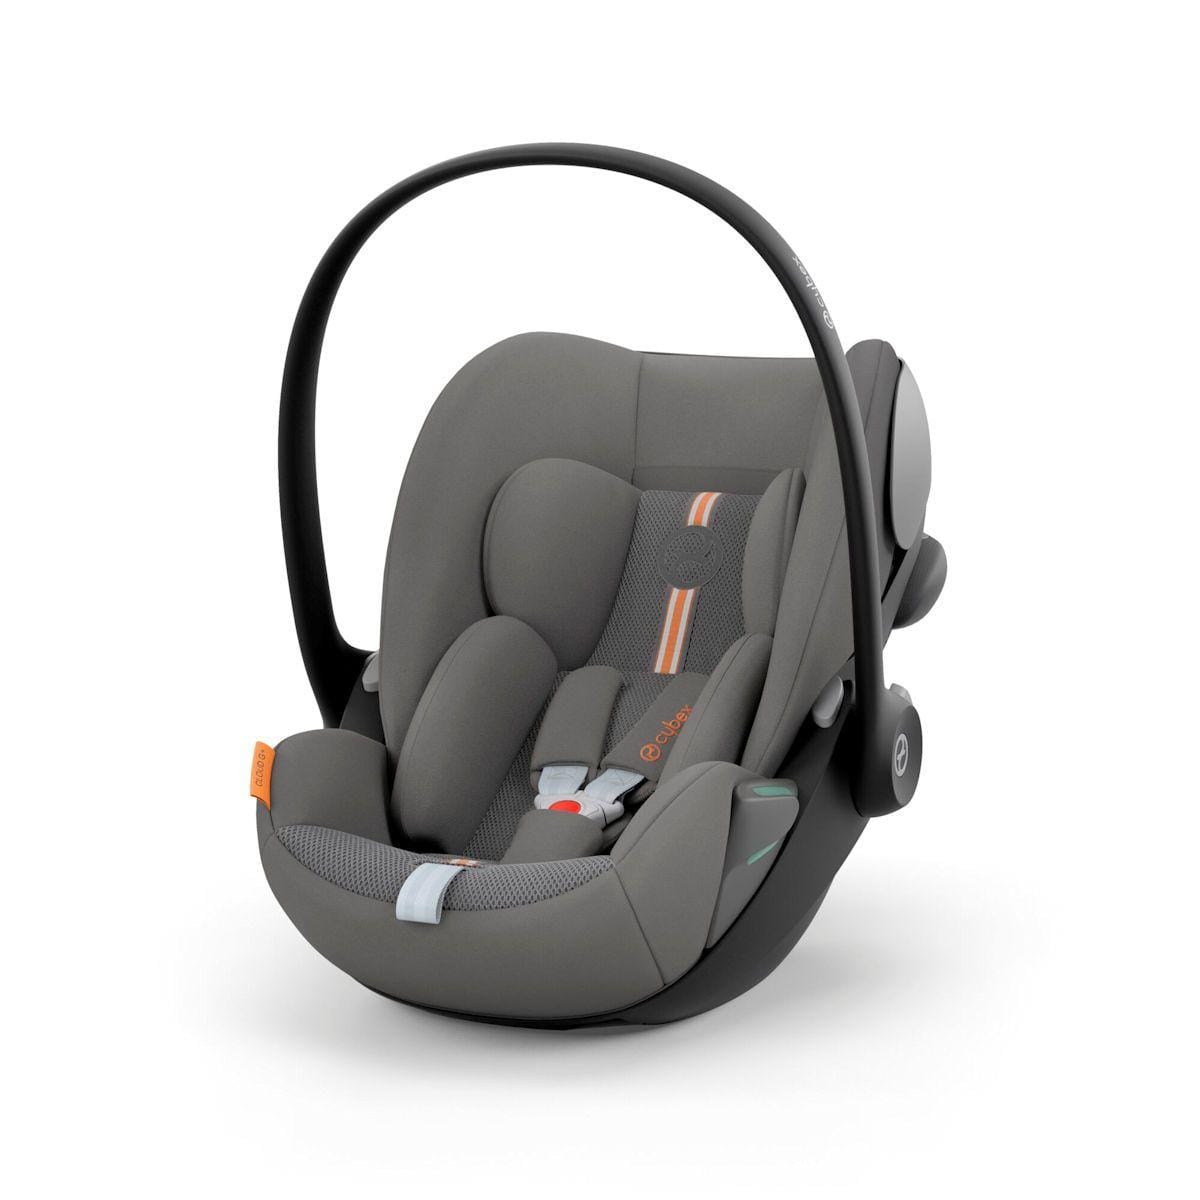 Cybex baby car seats Cybex G PLUS i-Size Car Seat Bundle - Lava Grey 15302-GRY